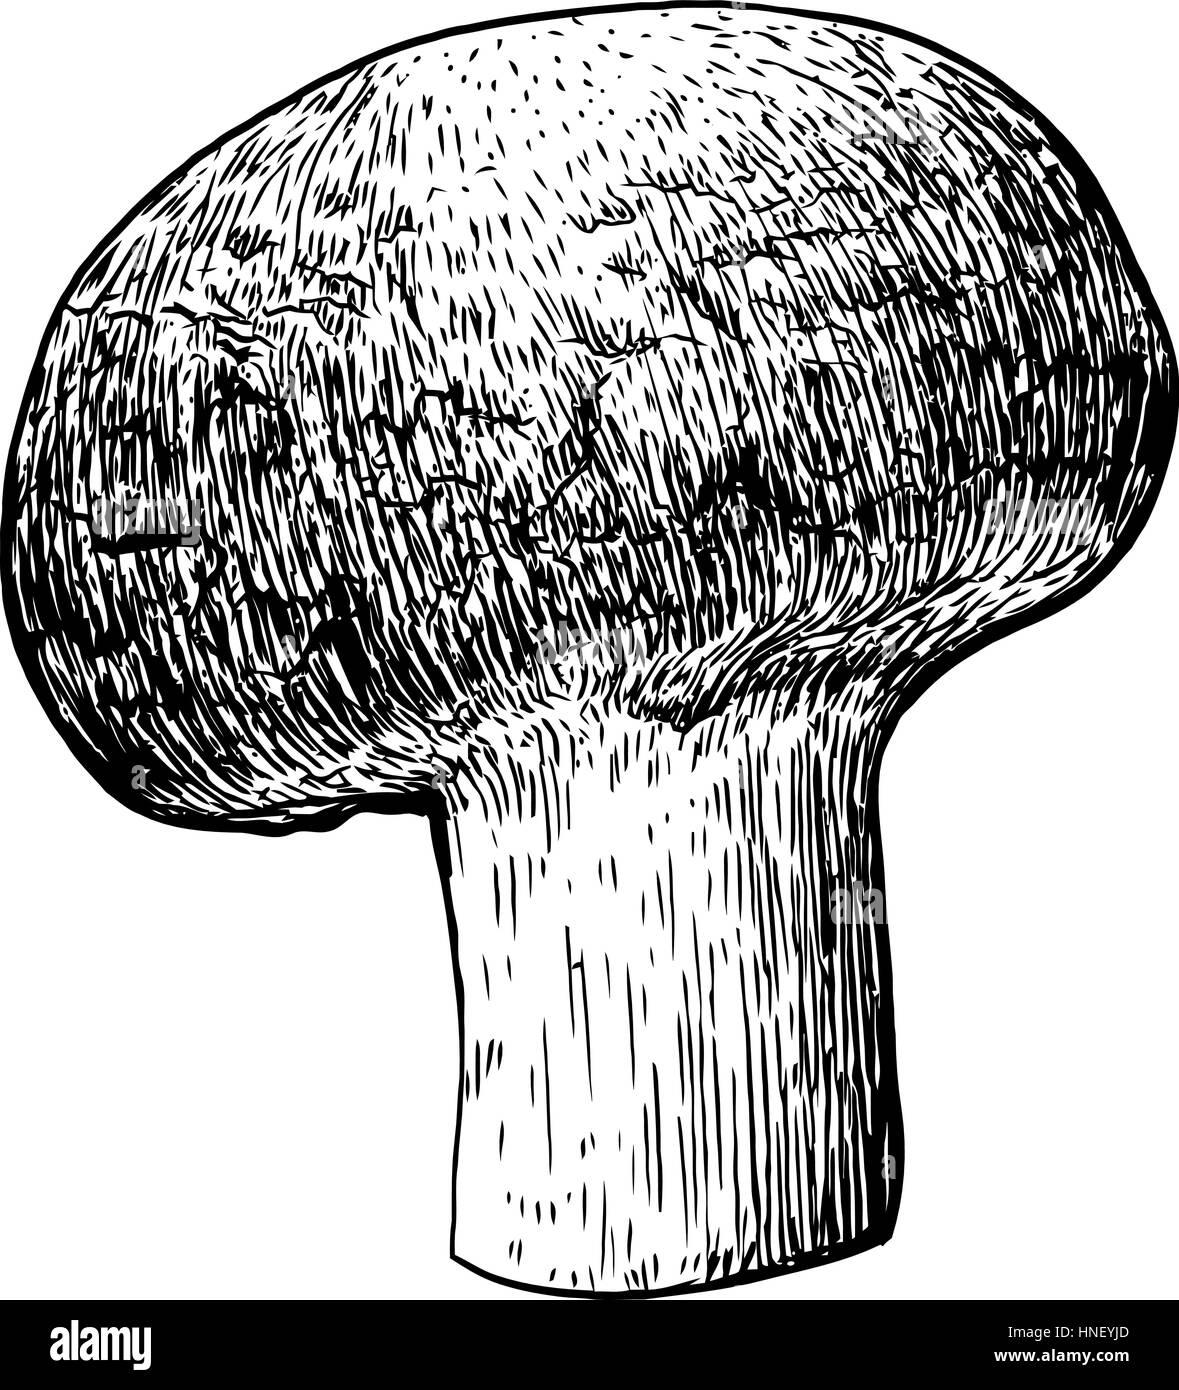 Funghi champignon illustrazione, disegno, incisione, line art Illustrazione Vettoriale